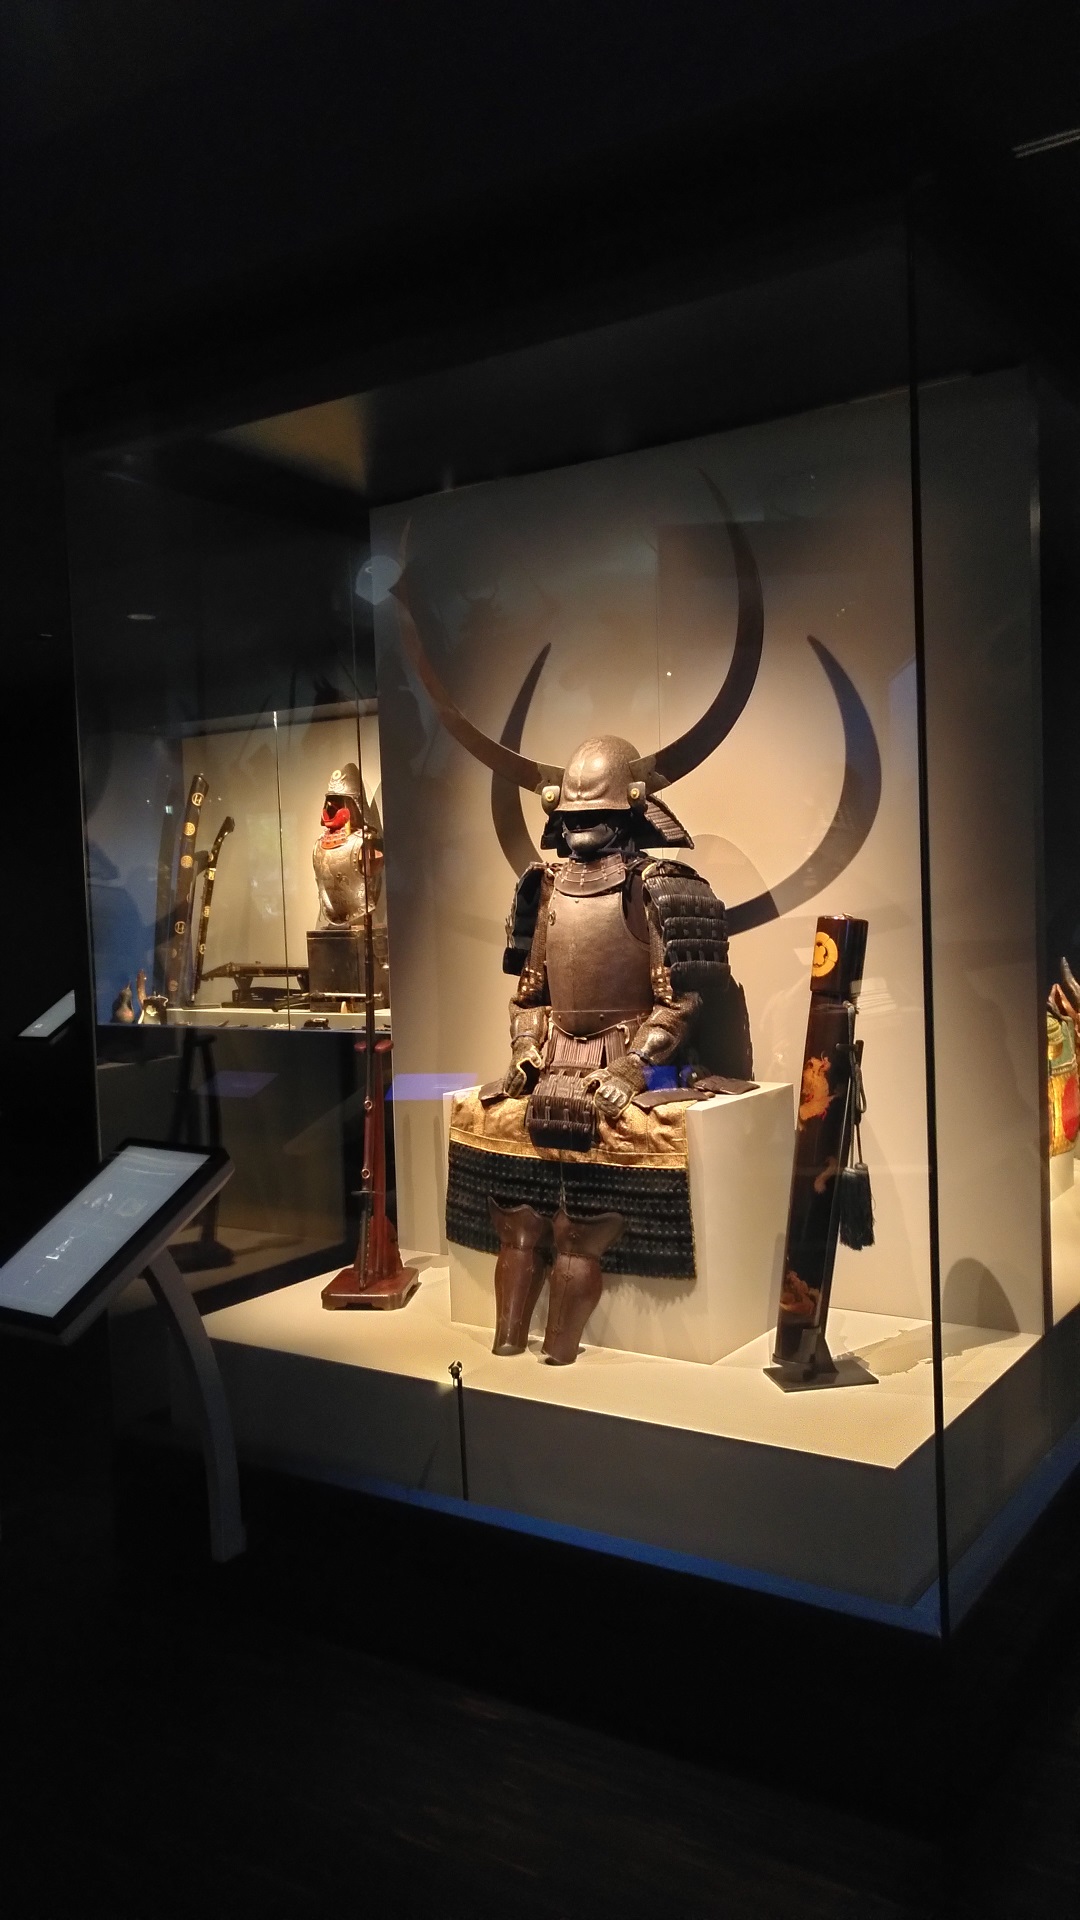 Repräsentative Samurai-Rüstung mit einem Helm, der mit einem riesigen Halbmond versehen ist.